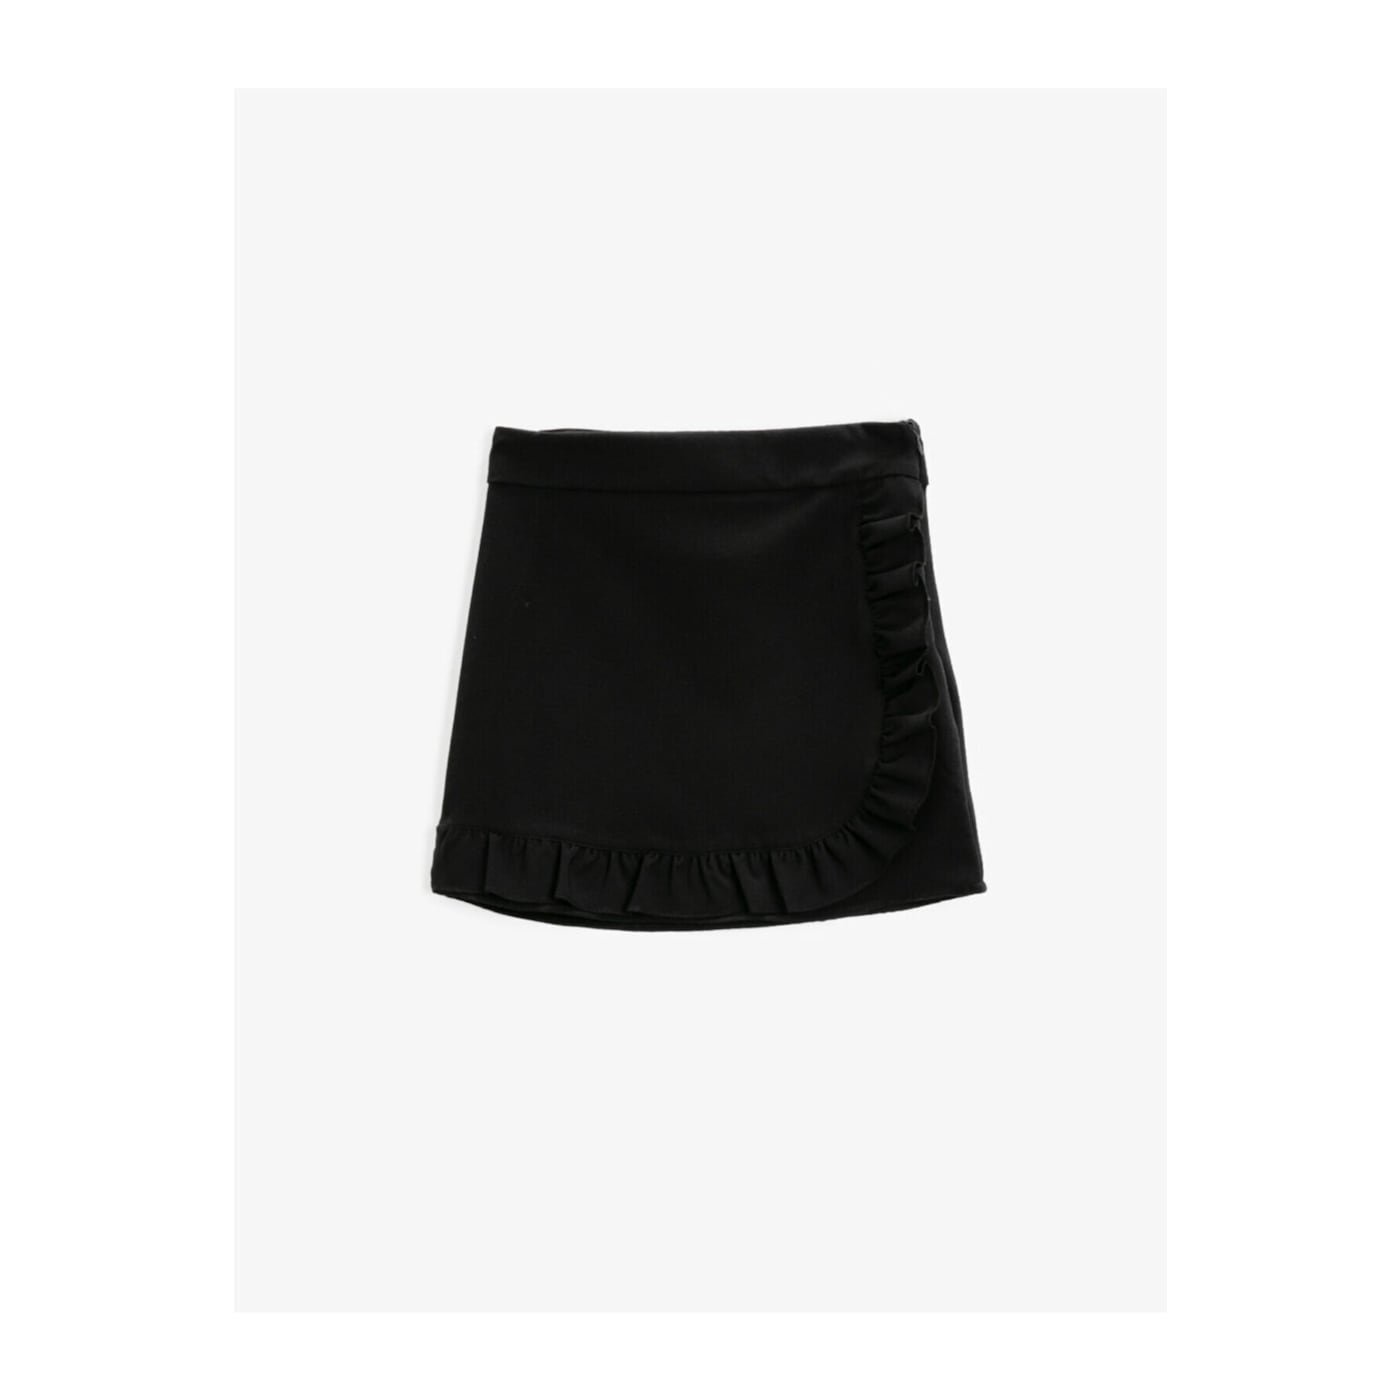 Koton Women Black Ruffle Skirt Mini